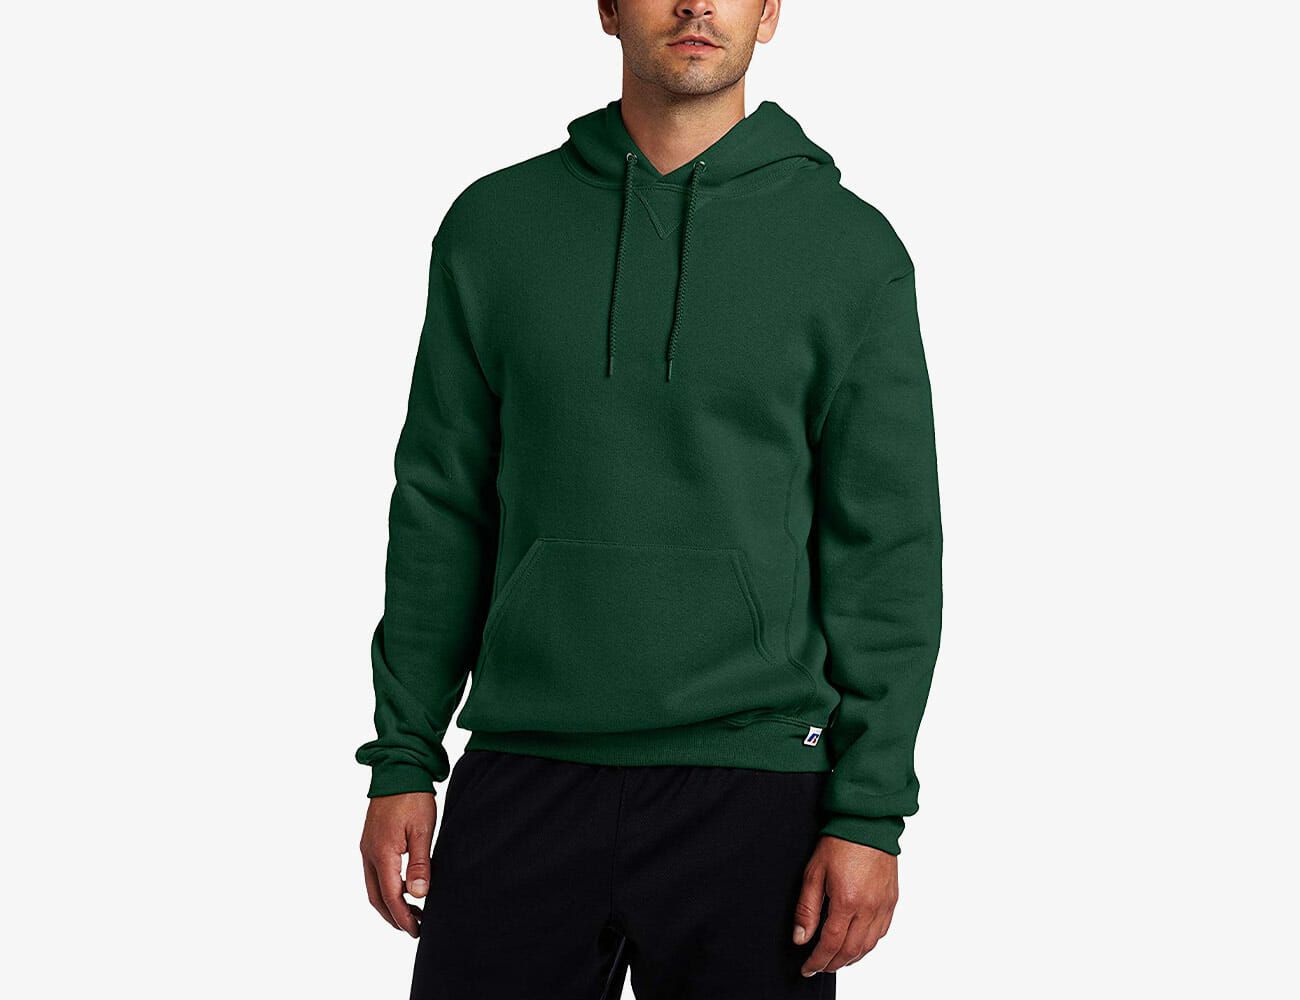 best hoodies for men